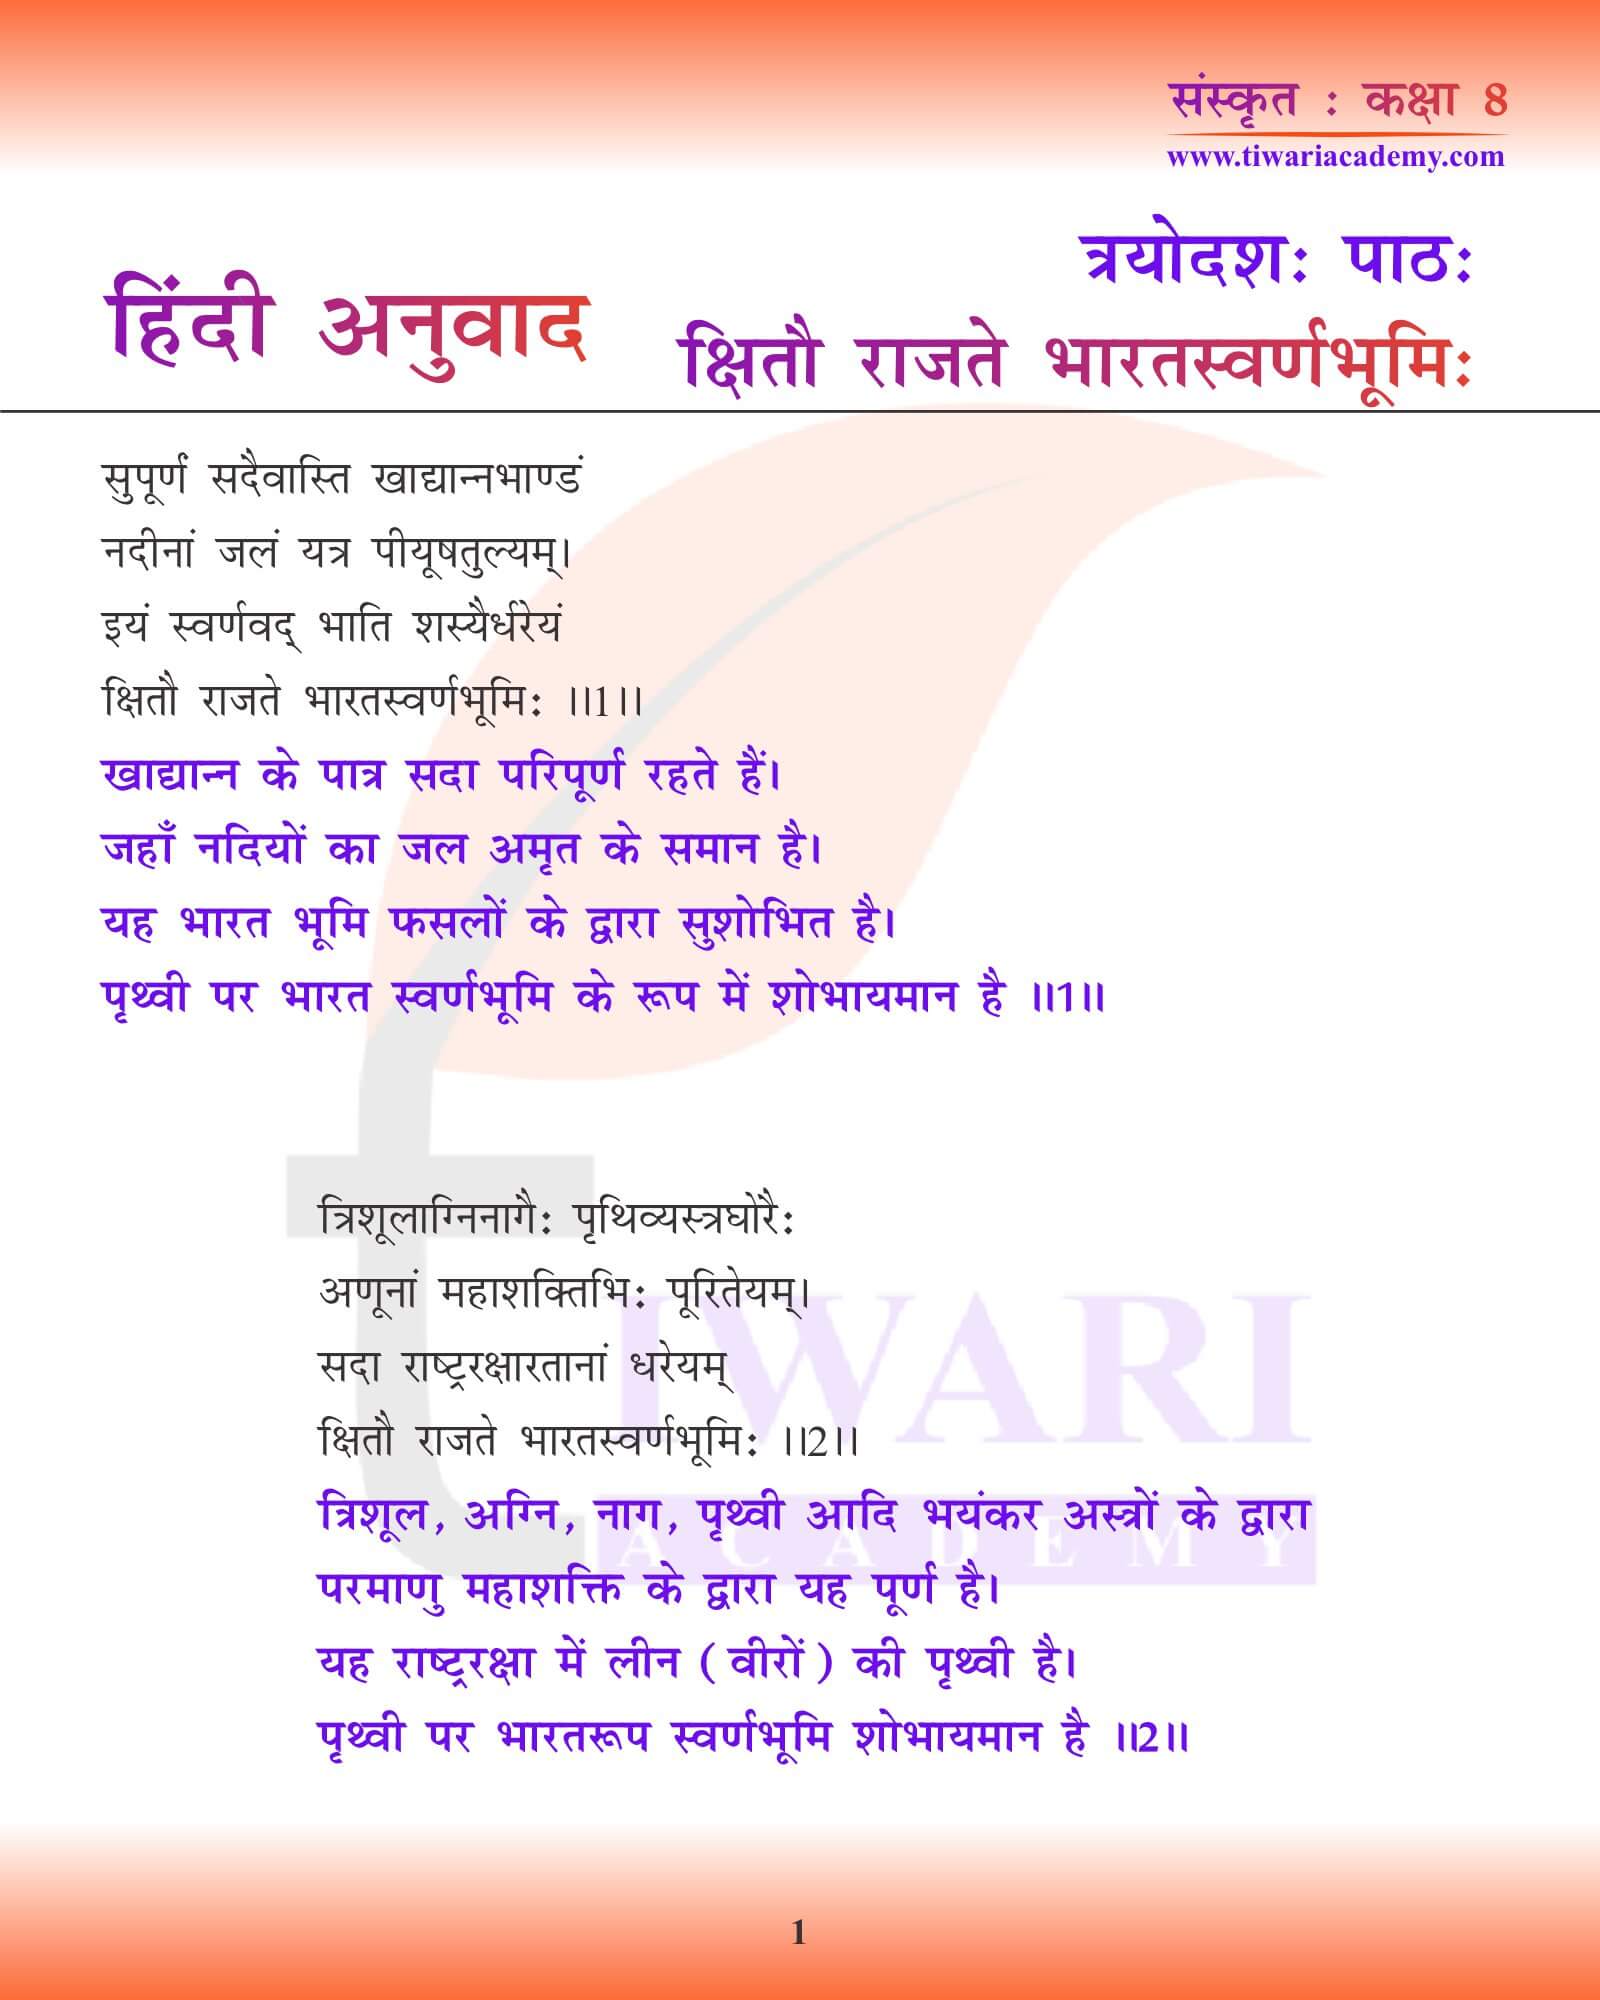 कक्षा 8 संस्कृत अध्याय 13 हिंदी में अनुवाद